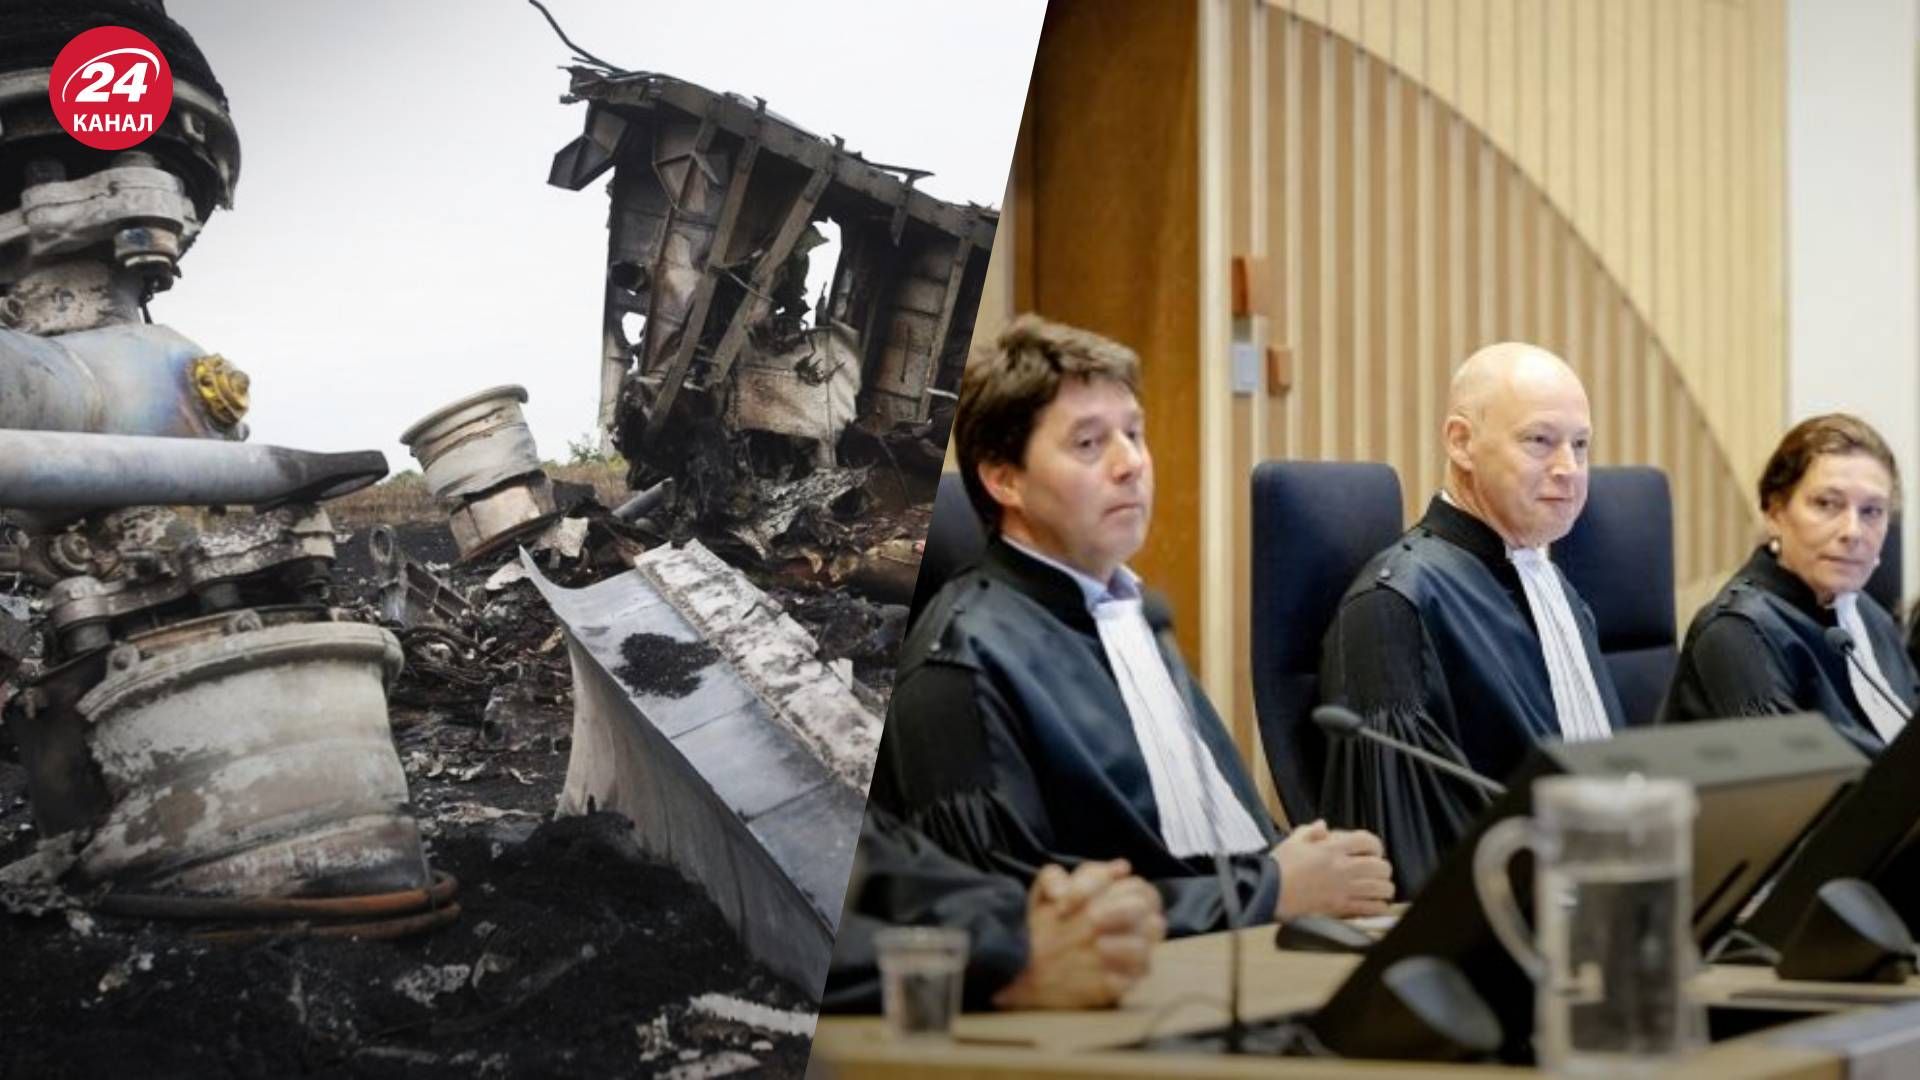 Вирок у справі MH17 виносить суд у Гаазі 17 листопада – онлайн-трансляція- 24 Канал